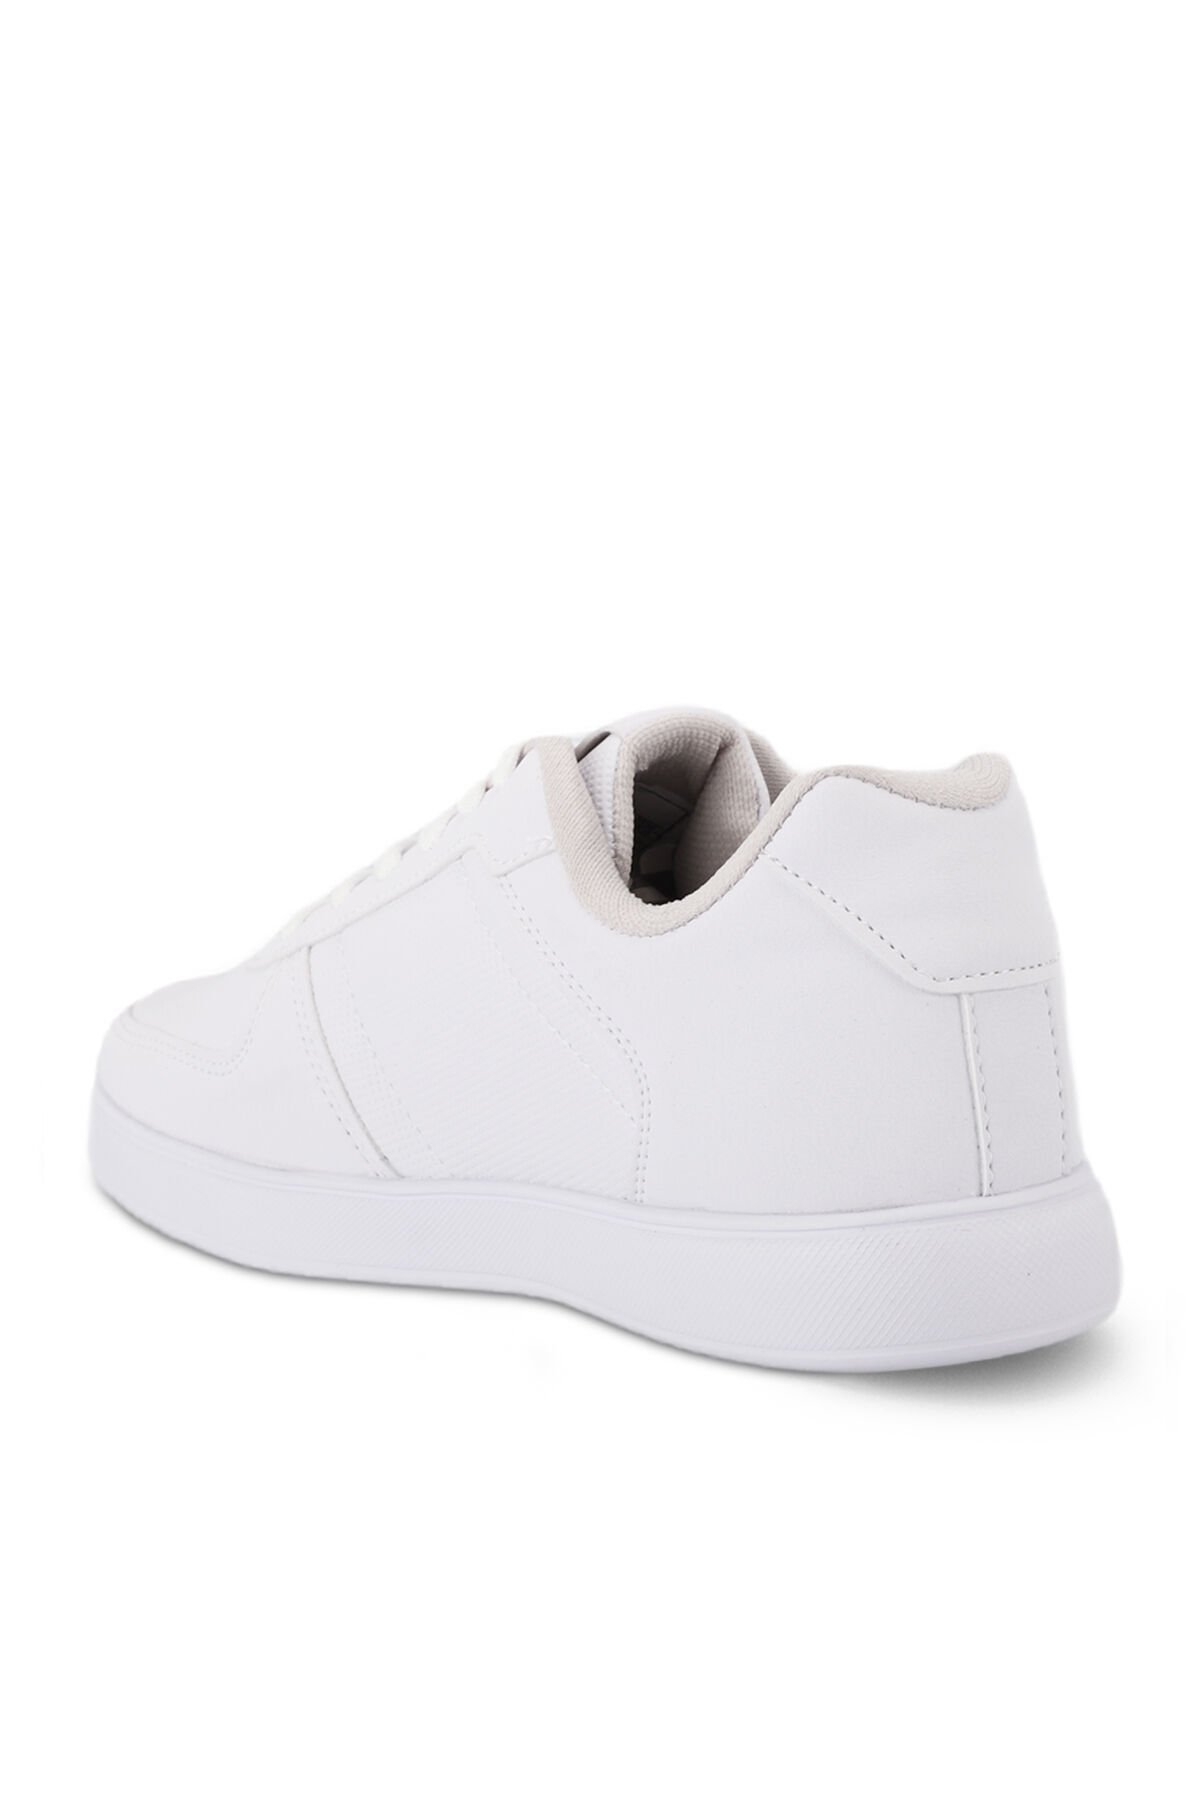 Slazenger POINT NEW I Sneaker Kadın Ayakkabı Beyaz - Thumbnail